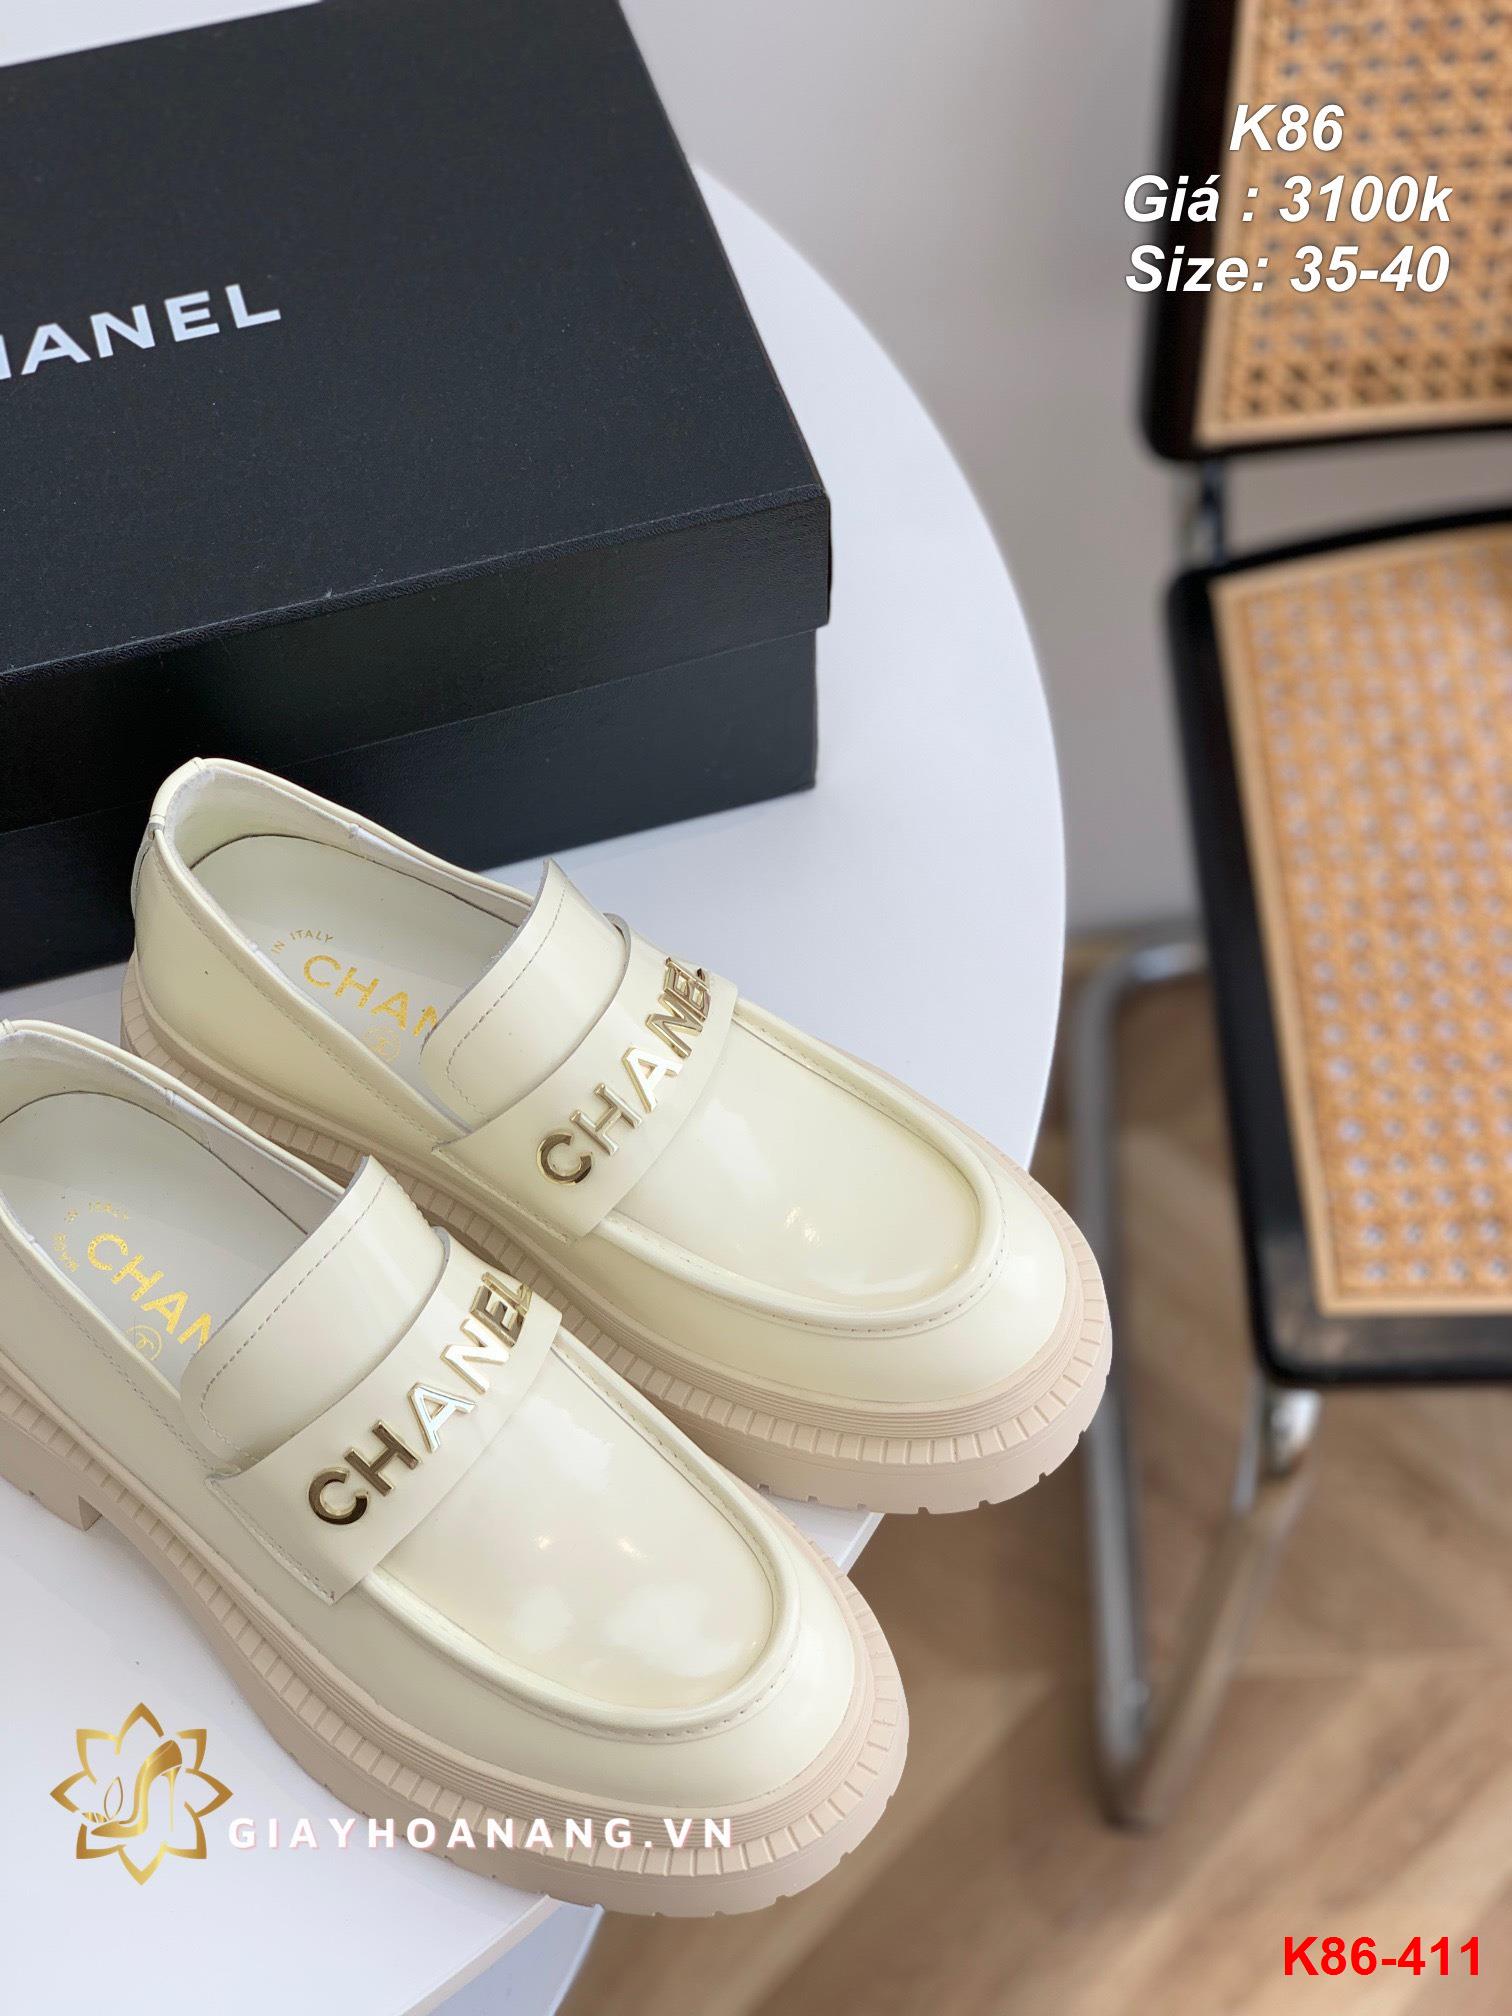 K86-411 Chanel giày lười siêu cấp